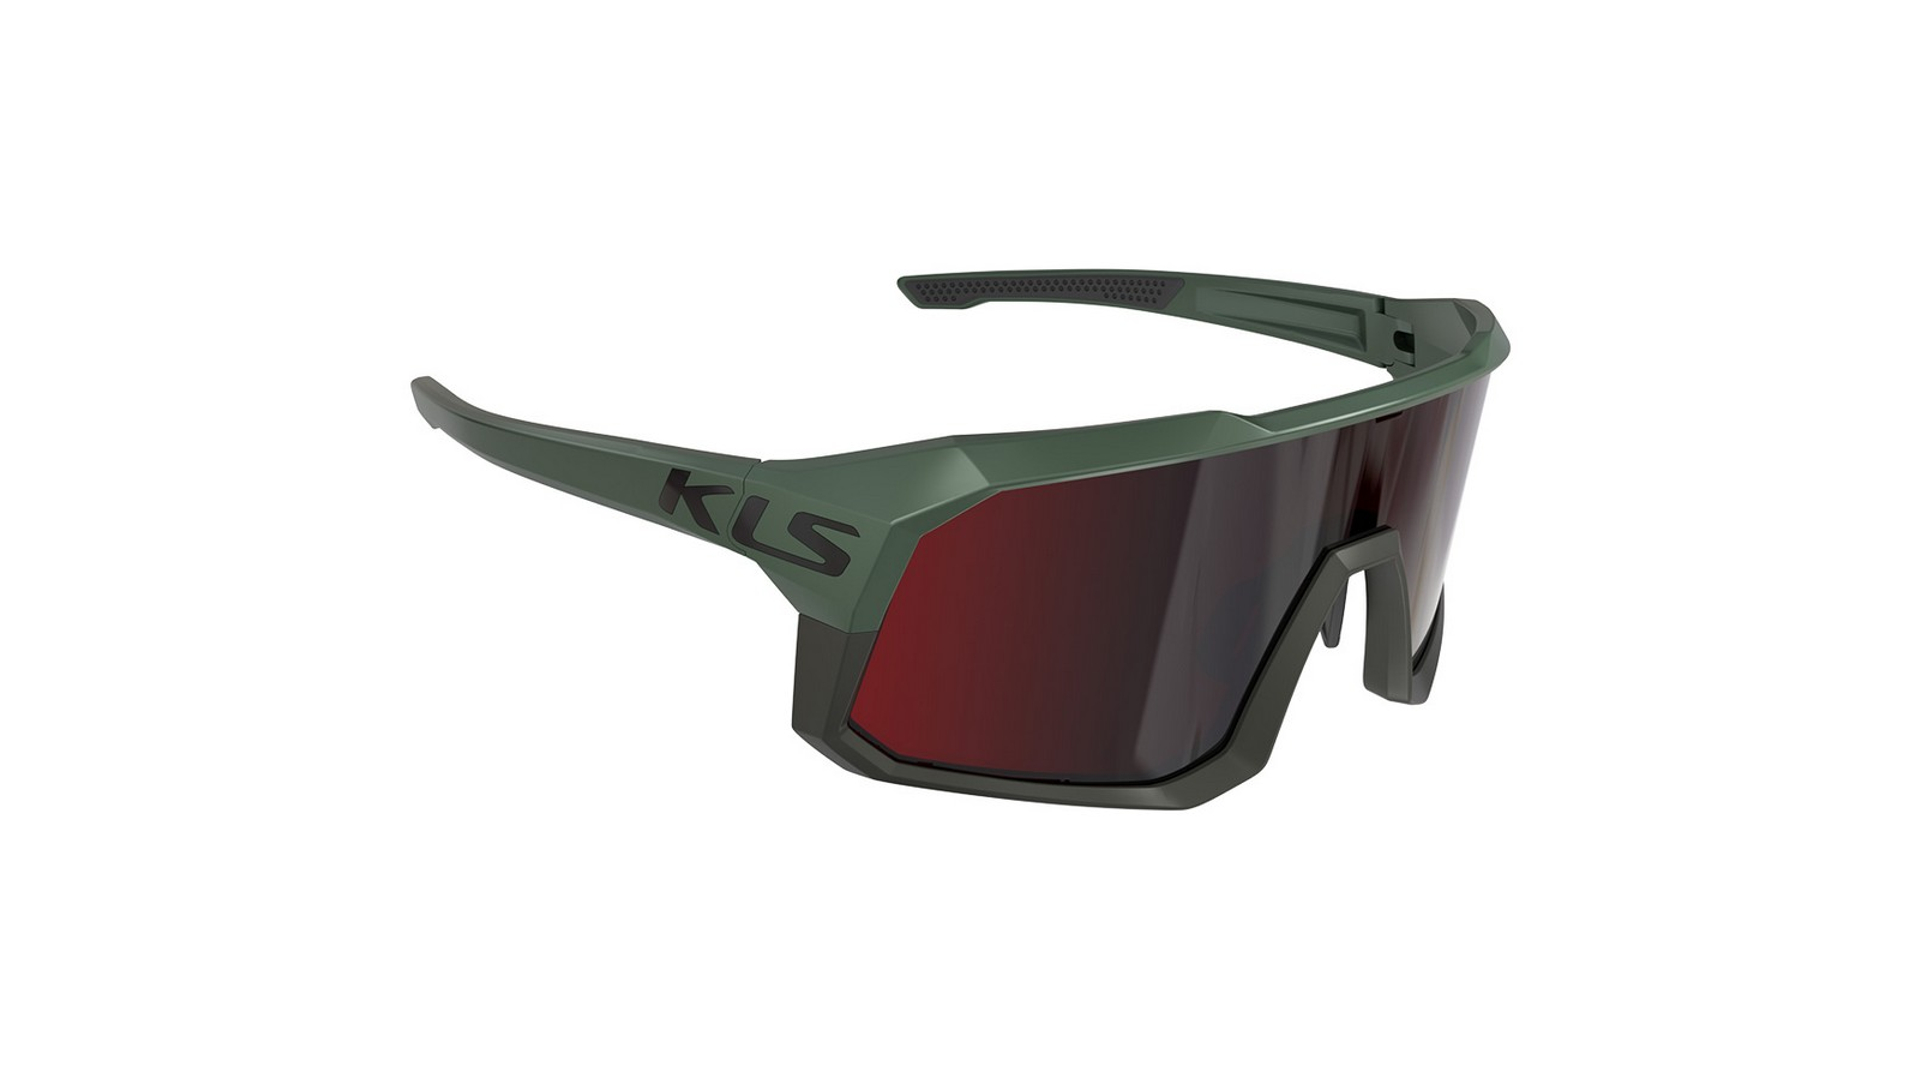 KLS Dice 2 kerékpáros szemüveg, Khaki/ Red Revo + Transparent